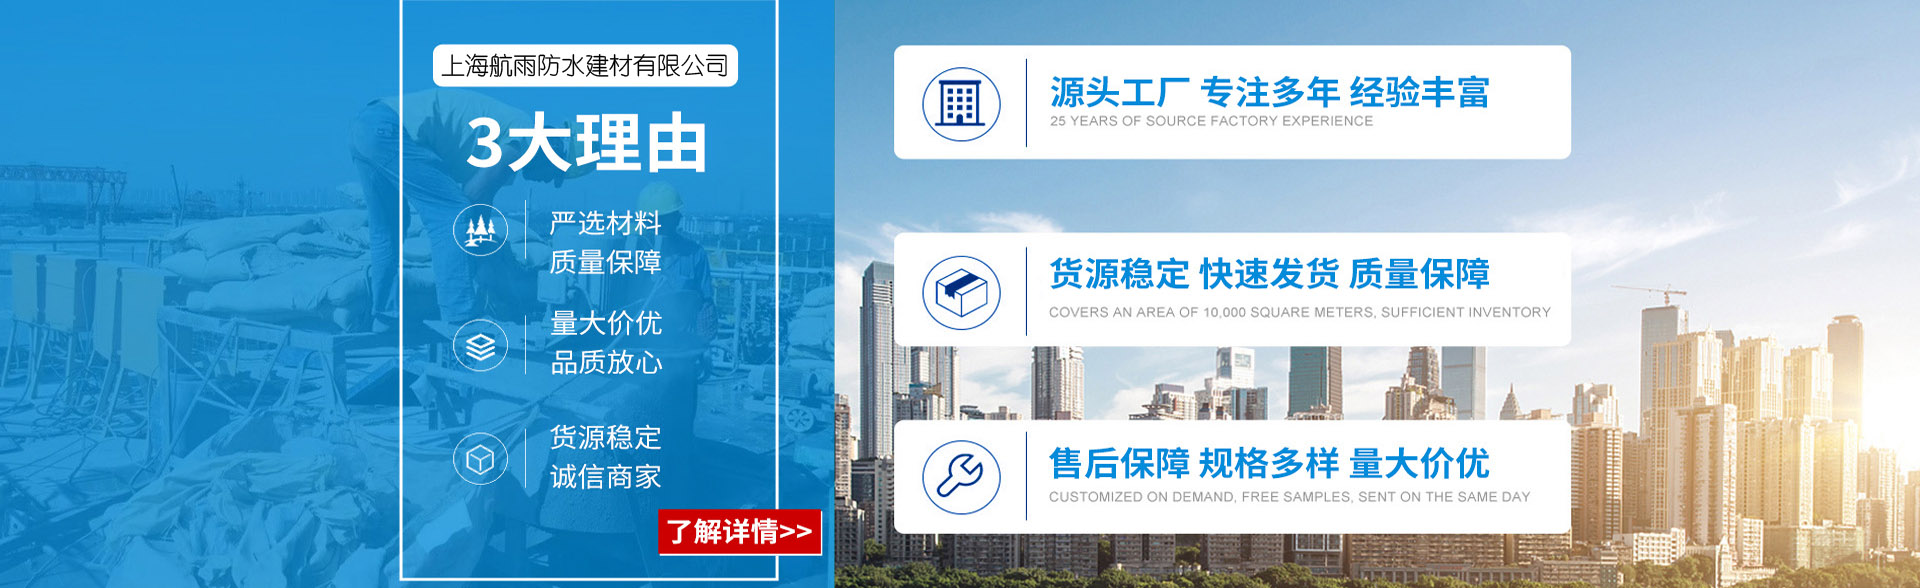 上海建括實業有限公司